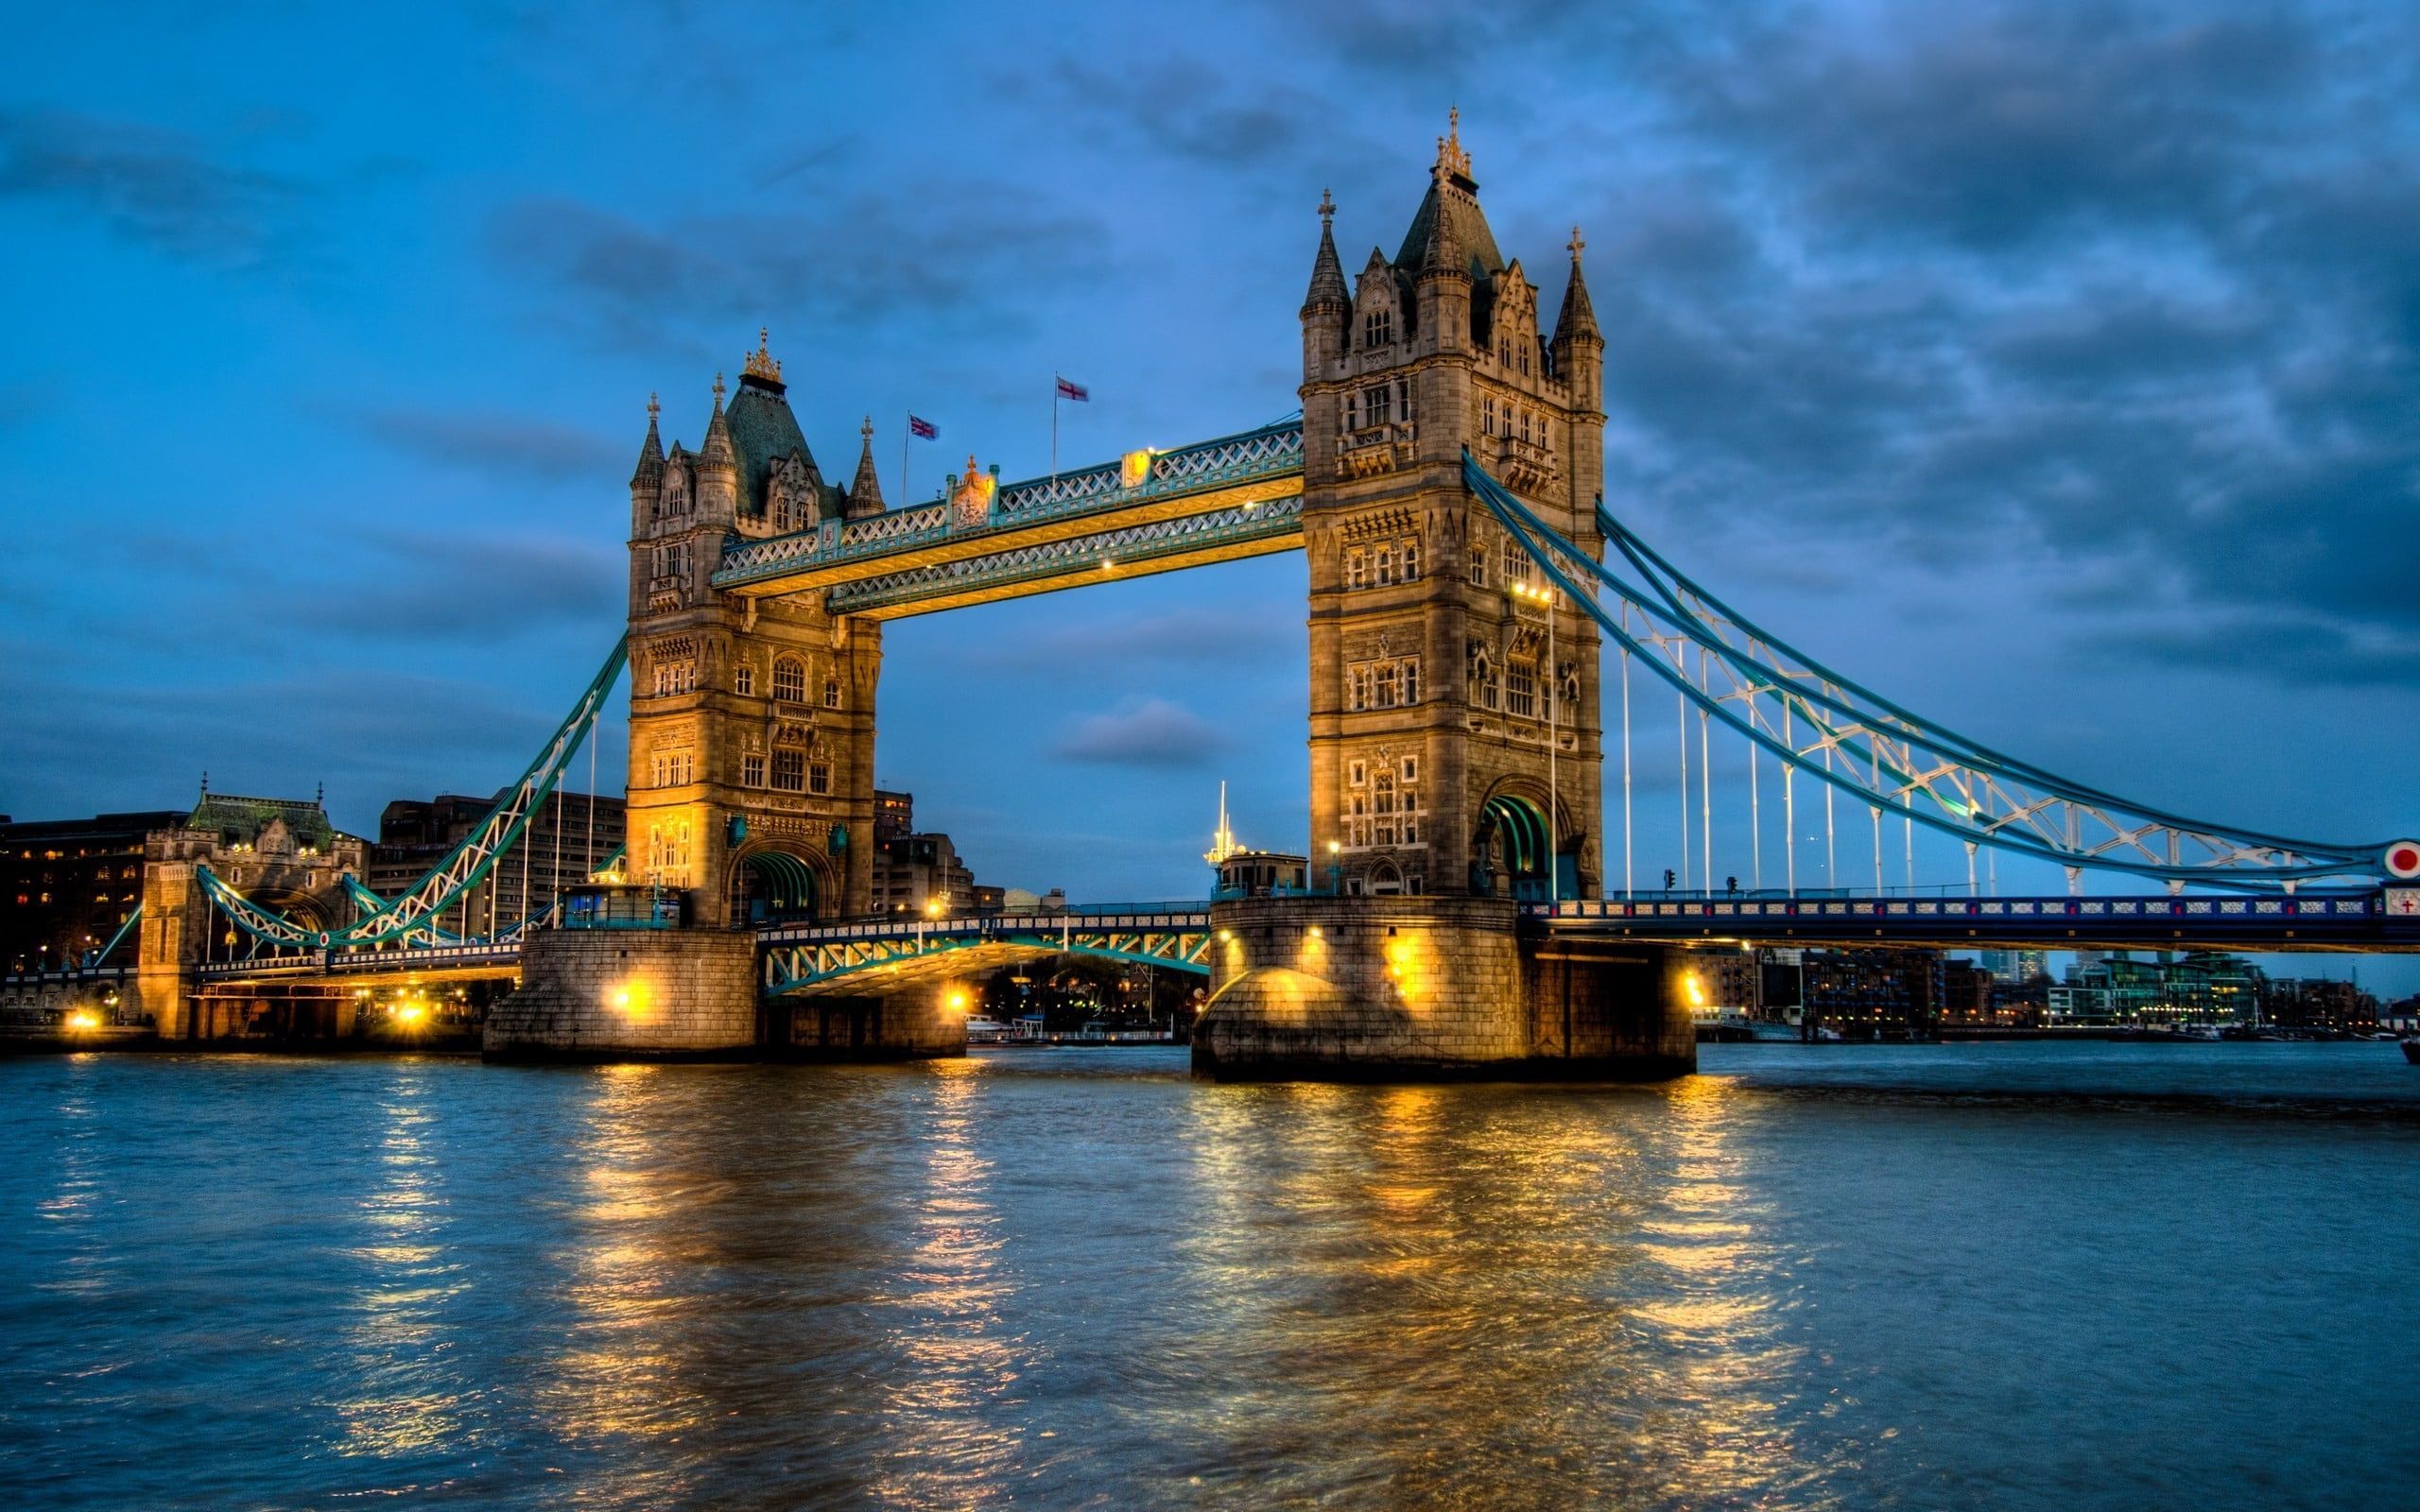 Tower Bridge, London, England, landscape, architecture, nature